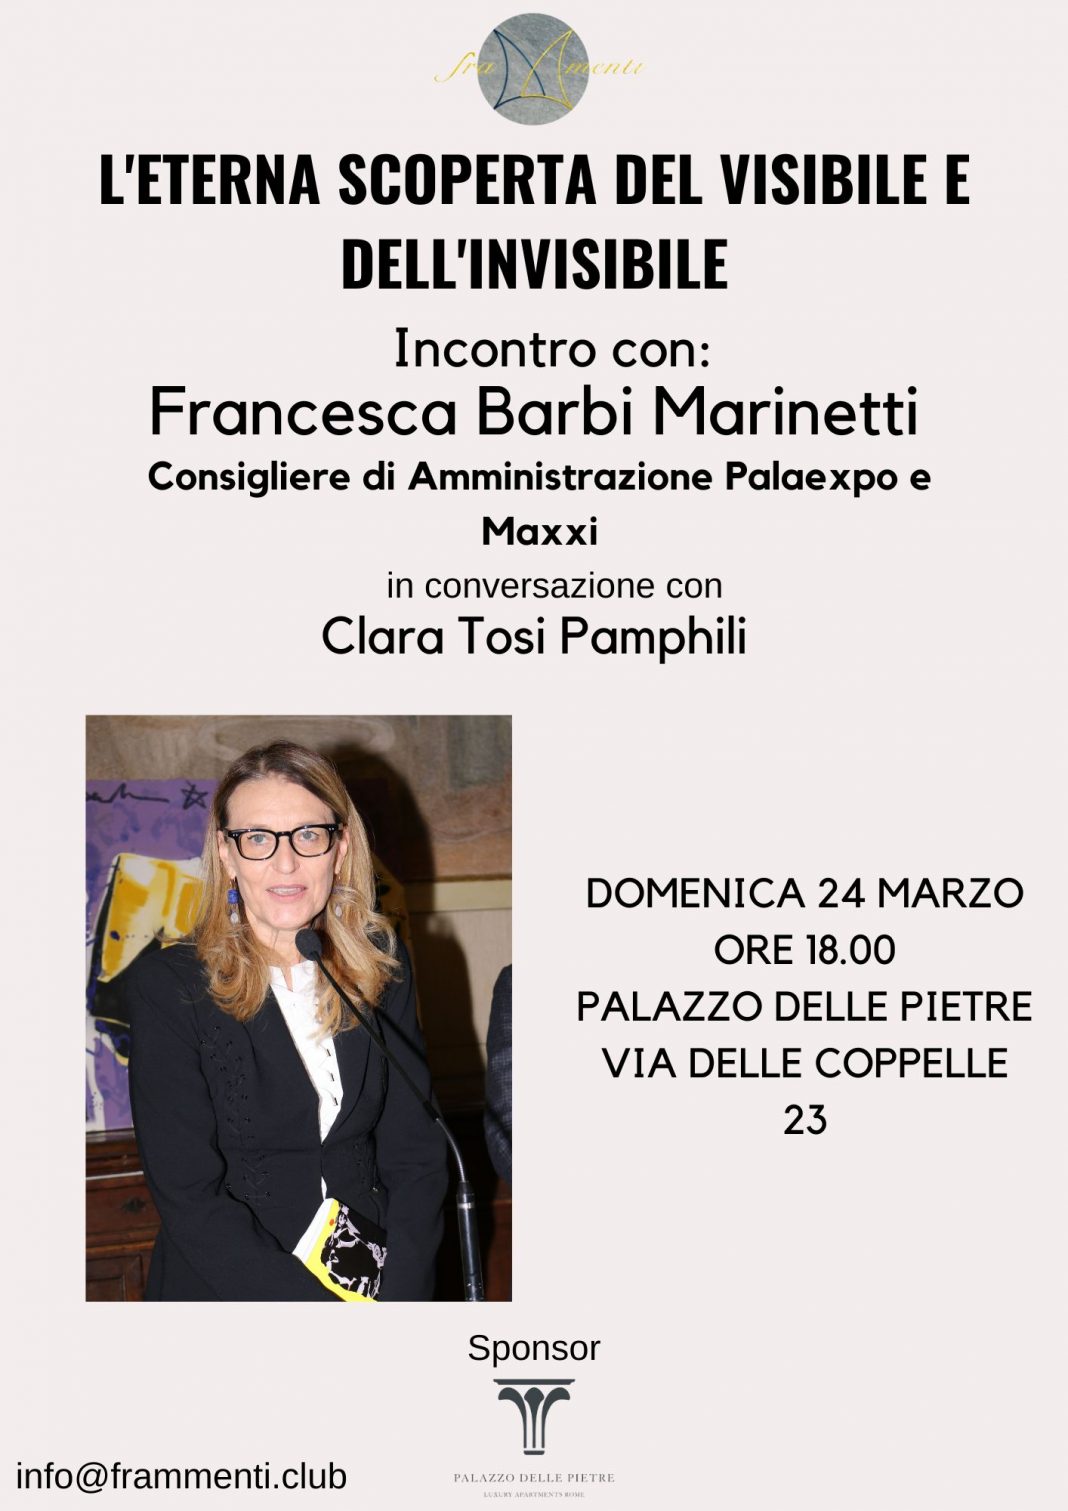 L’Eterna Scoperta del Visibile e dell’Invisibile – Incontro con Francesca Barbi Marinettihttps://www.exibart.com/repository/media/formidable/11/img/5c0/image005-1068x1511.jpg